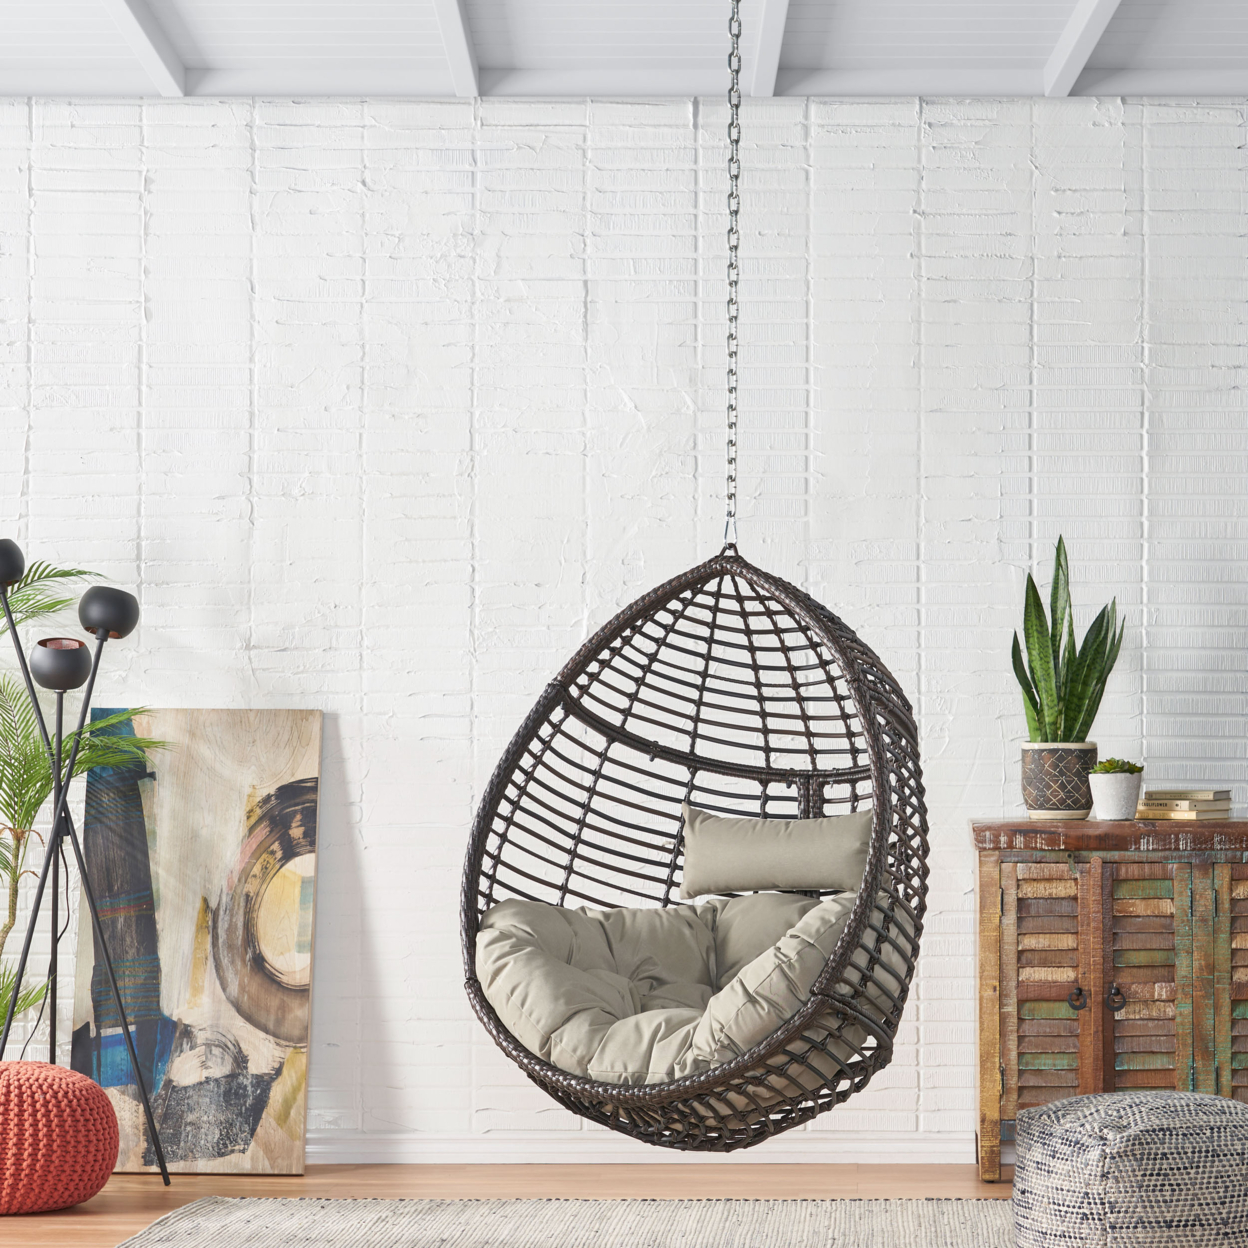 Hempstead Indoor/Outdoor Wicker Hanging Teardrop / Egg Chair (NO STAND) - Multi-brown/khaki